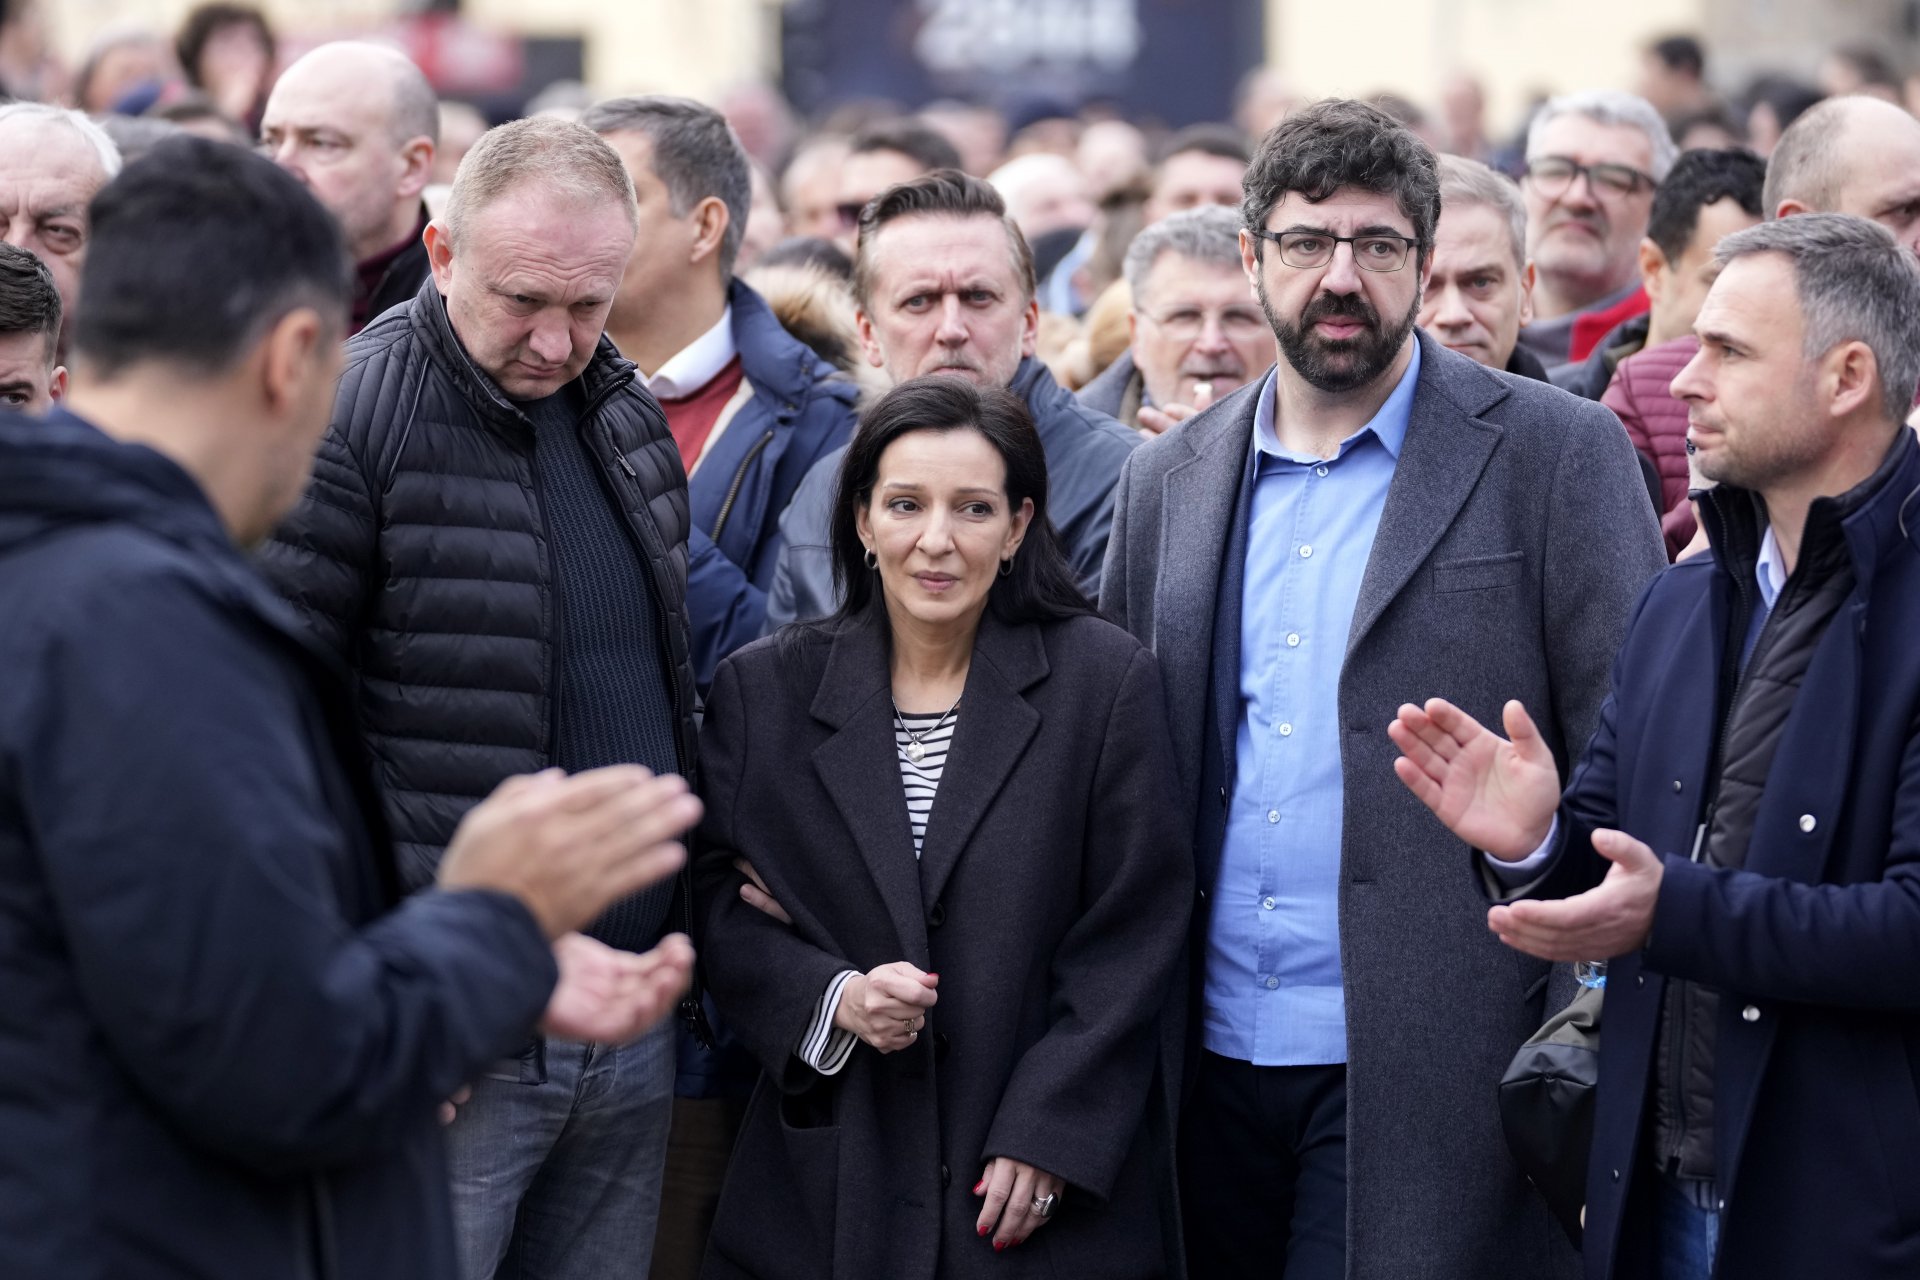 Протестиращите приветстваха Мариника Тепич, лидер на опозиционния алианс "Сърбия срещу насилието", която води гладна стачка от 18 декември